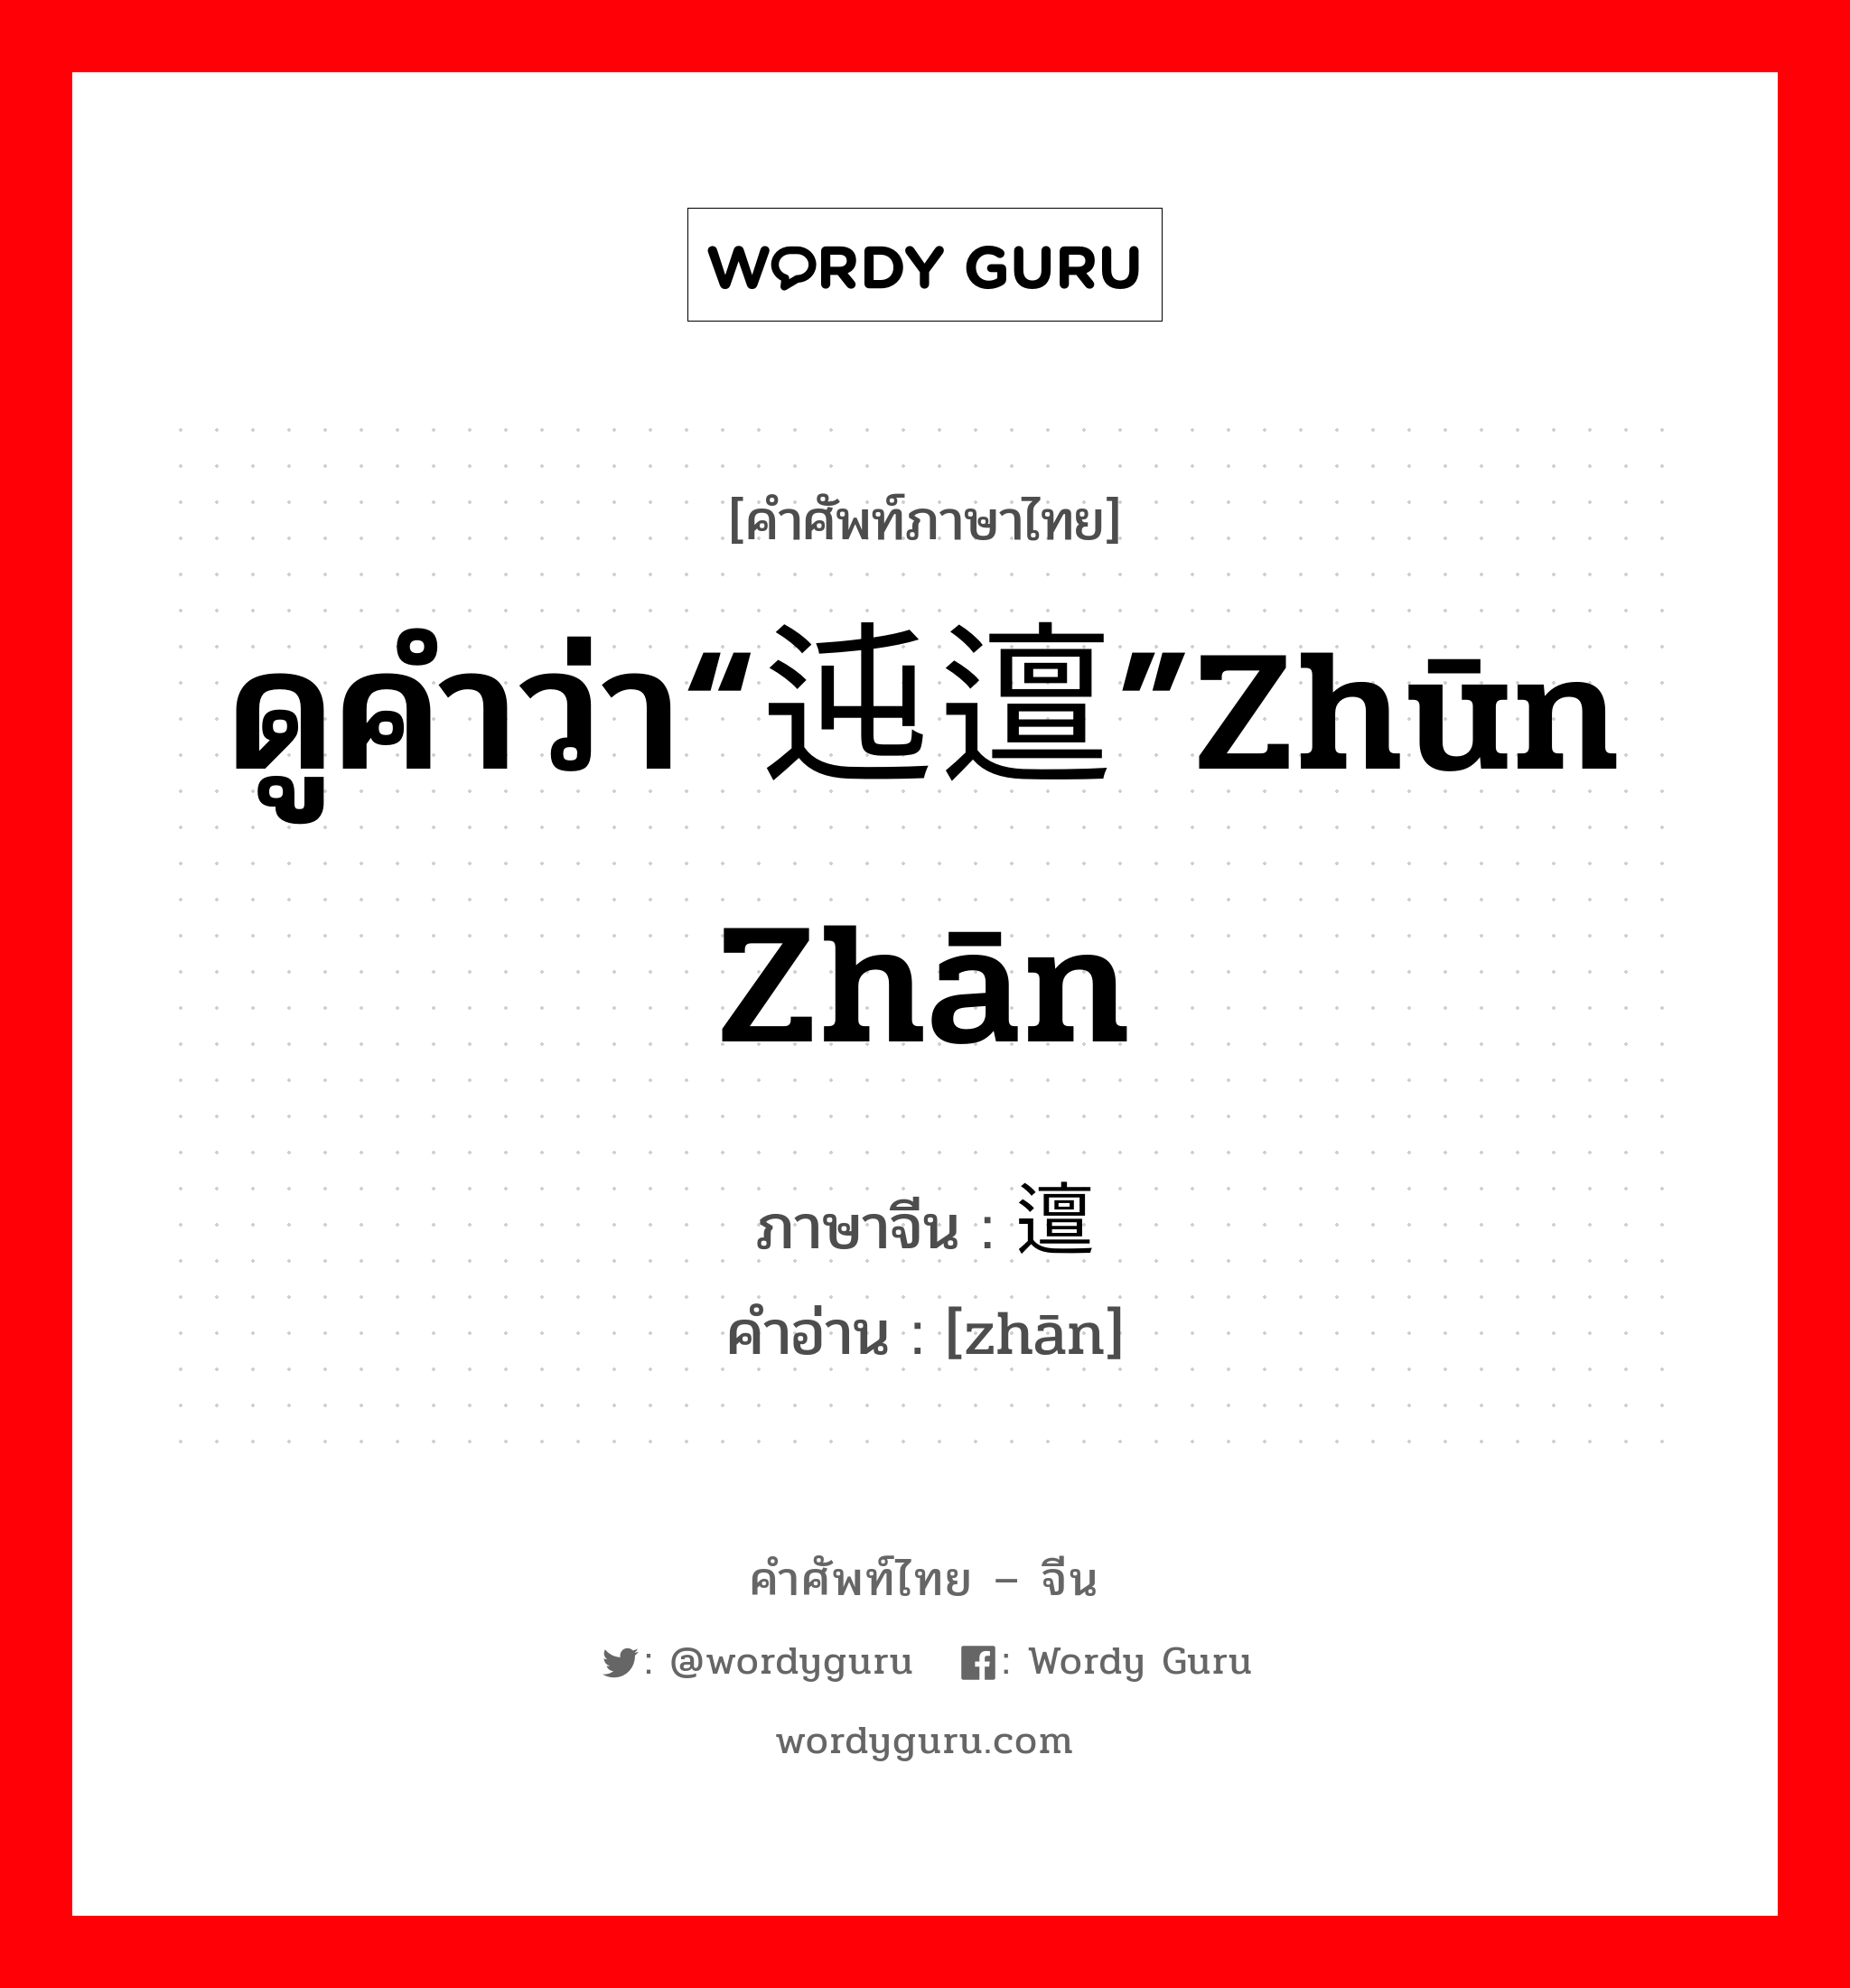 ดูคำว่า“迍邅”zhūn zhān ภาษาจีนคืออะไร, คำศัพท์ภาษาไทย - จีน ดูคำว่า“迍邅”zhūn zhān ภาษาจีน 邅 คำอ่าน [zhān]